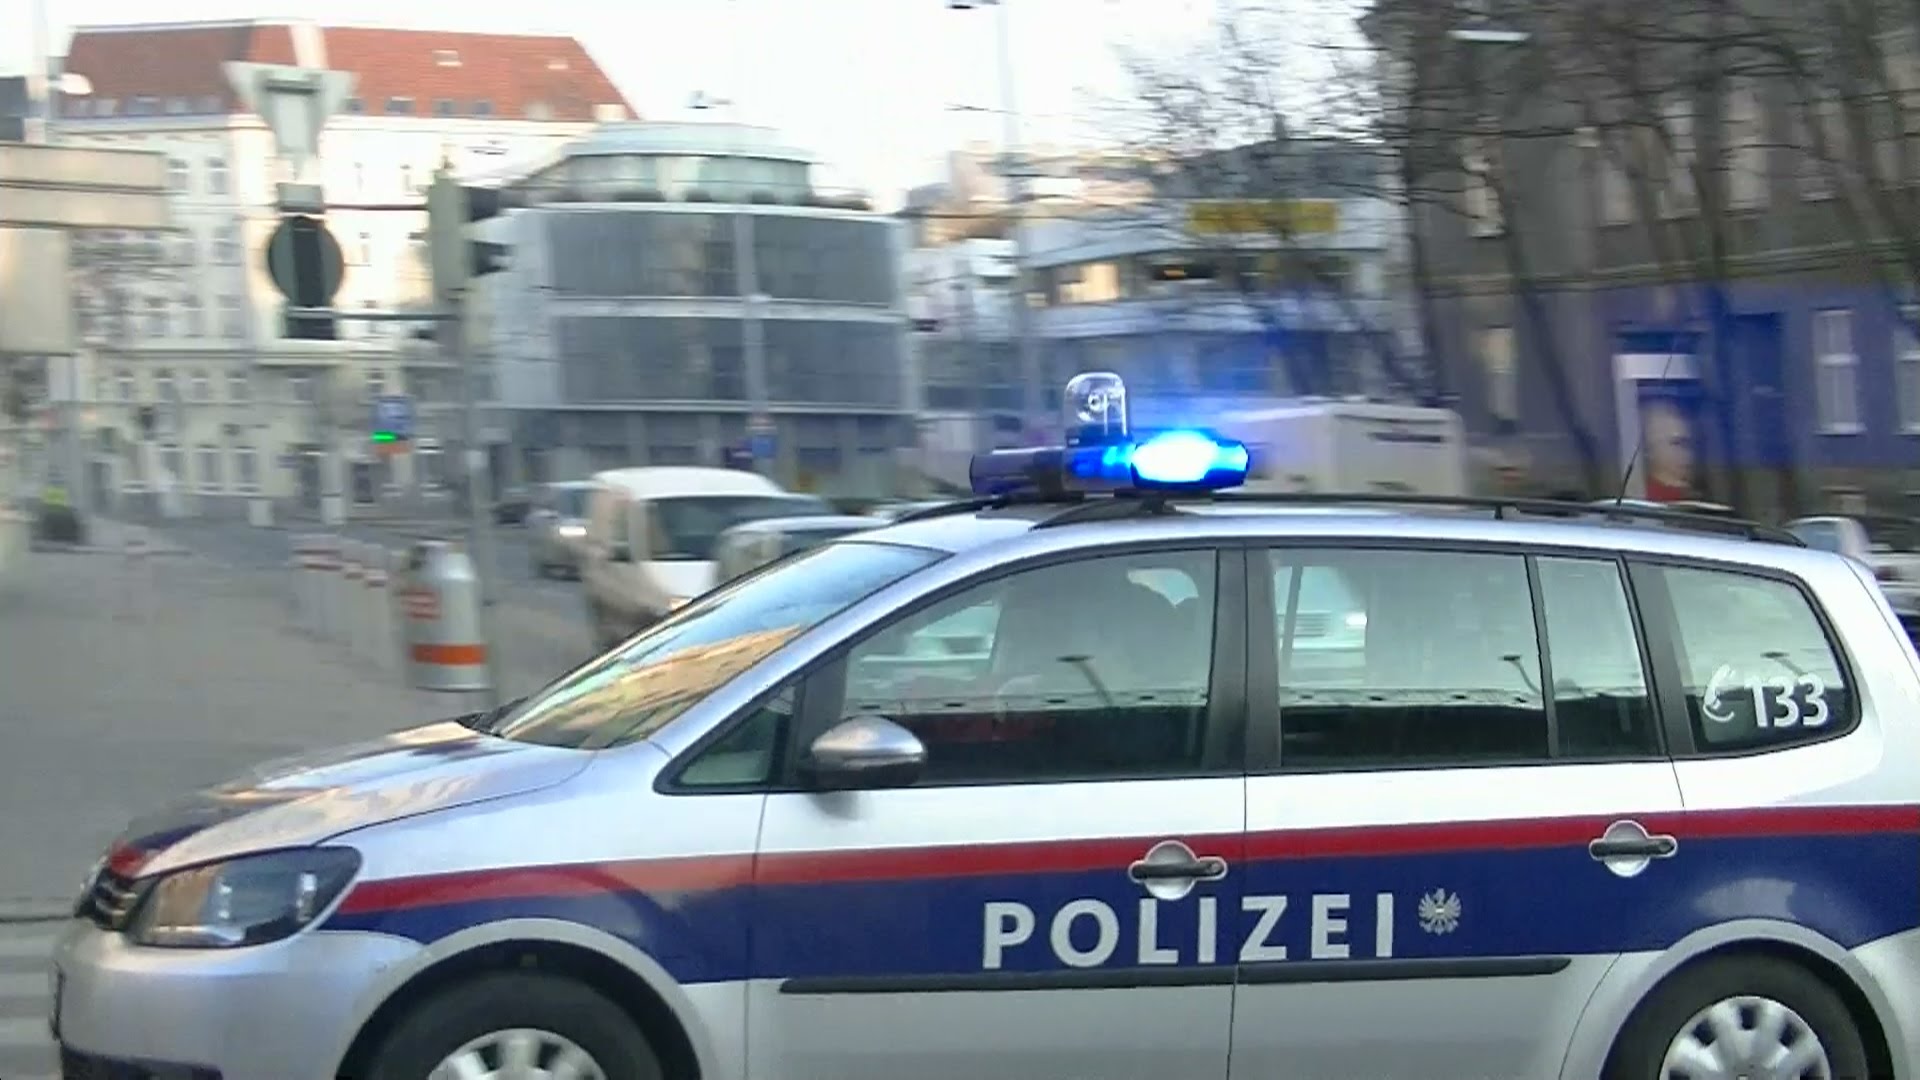 Barbat suspectat de planuirea unui atac cu bomba la Viena, arestat. 